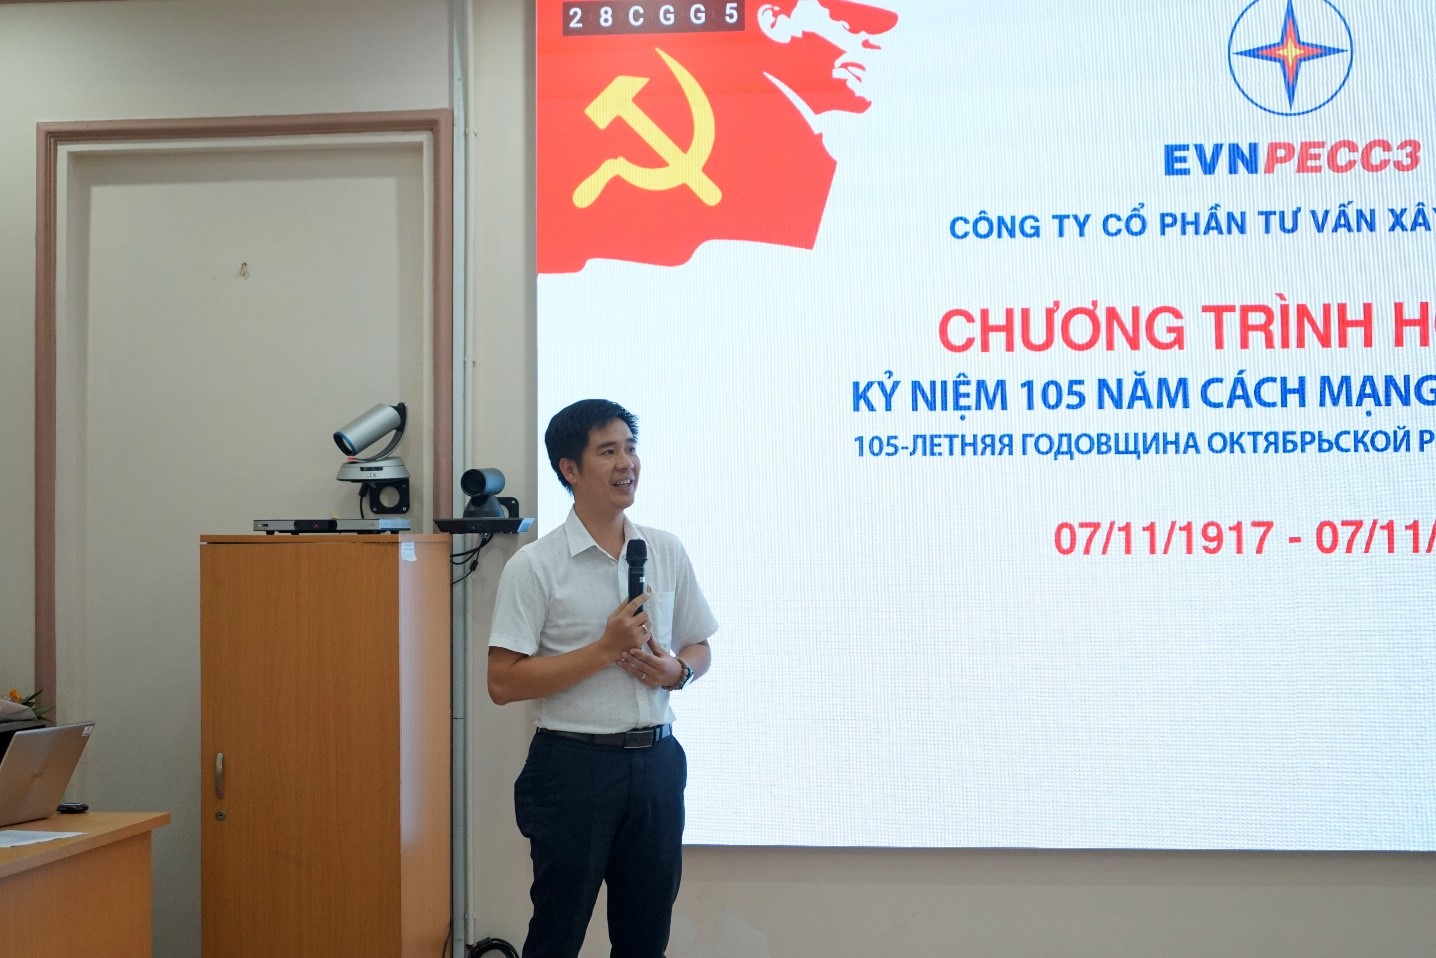 Đ/c Cao Văn Đức, Trưởng Ban Tuyên giáo Đảng ủy Khối Cơ sở Bộ Công thương tại TP.HCM phát biểu tại Chương trình họp mặt.